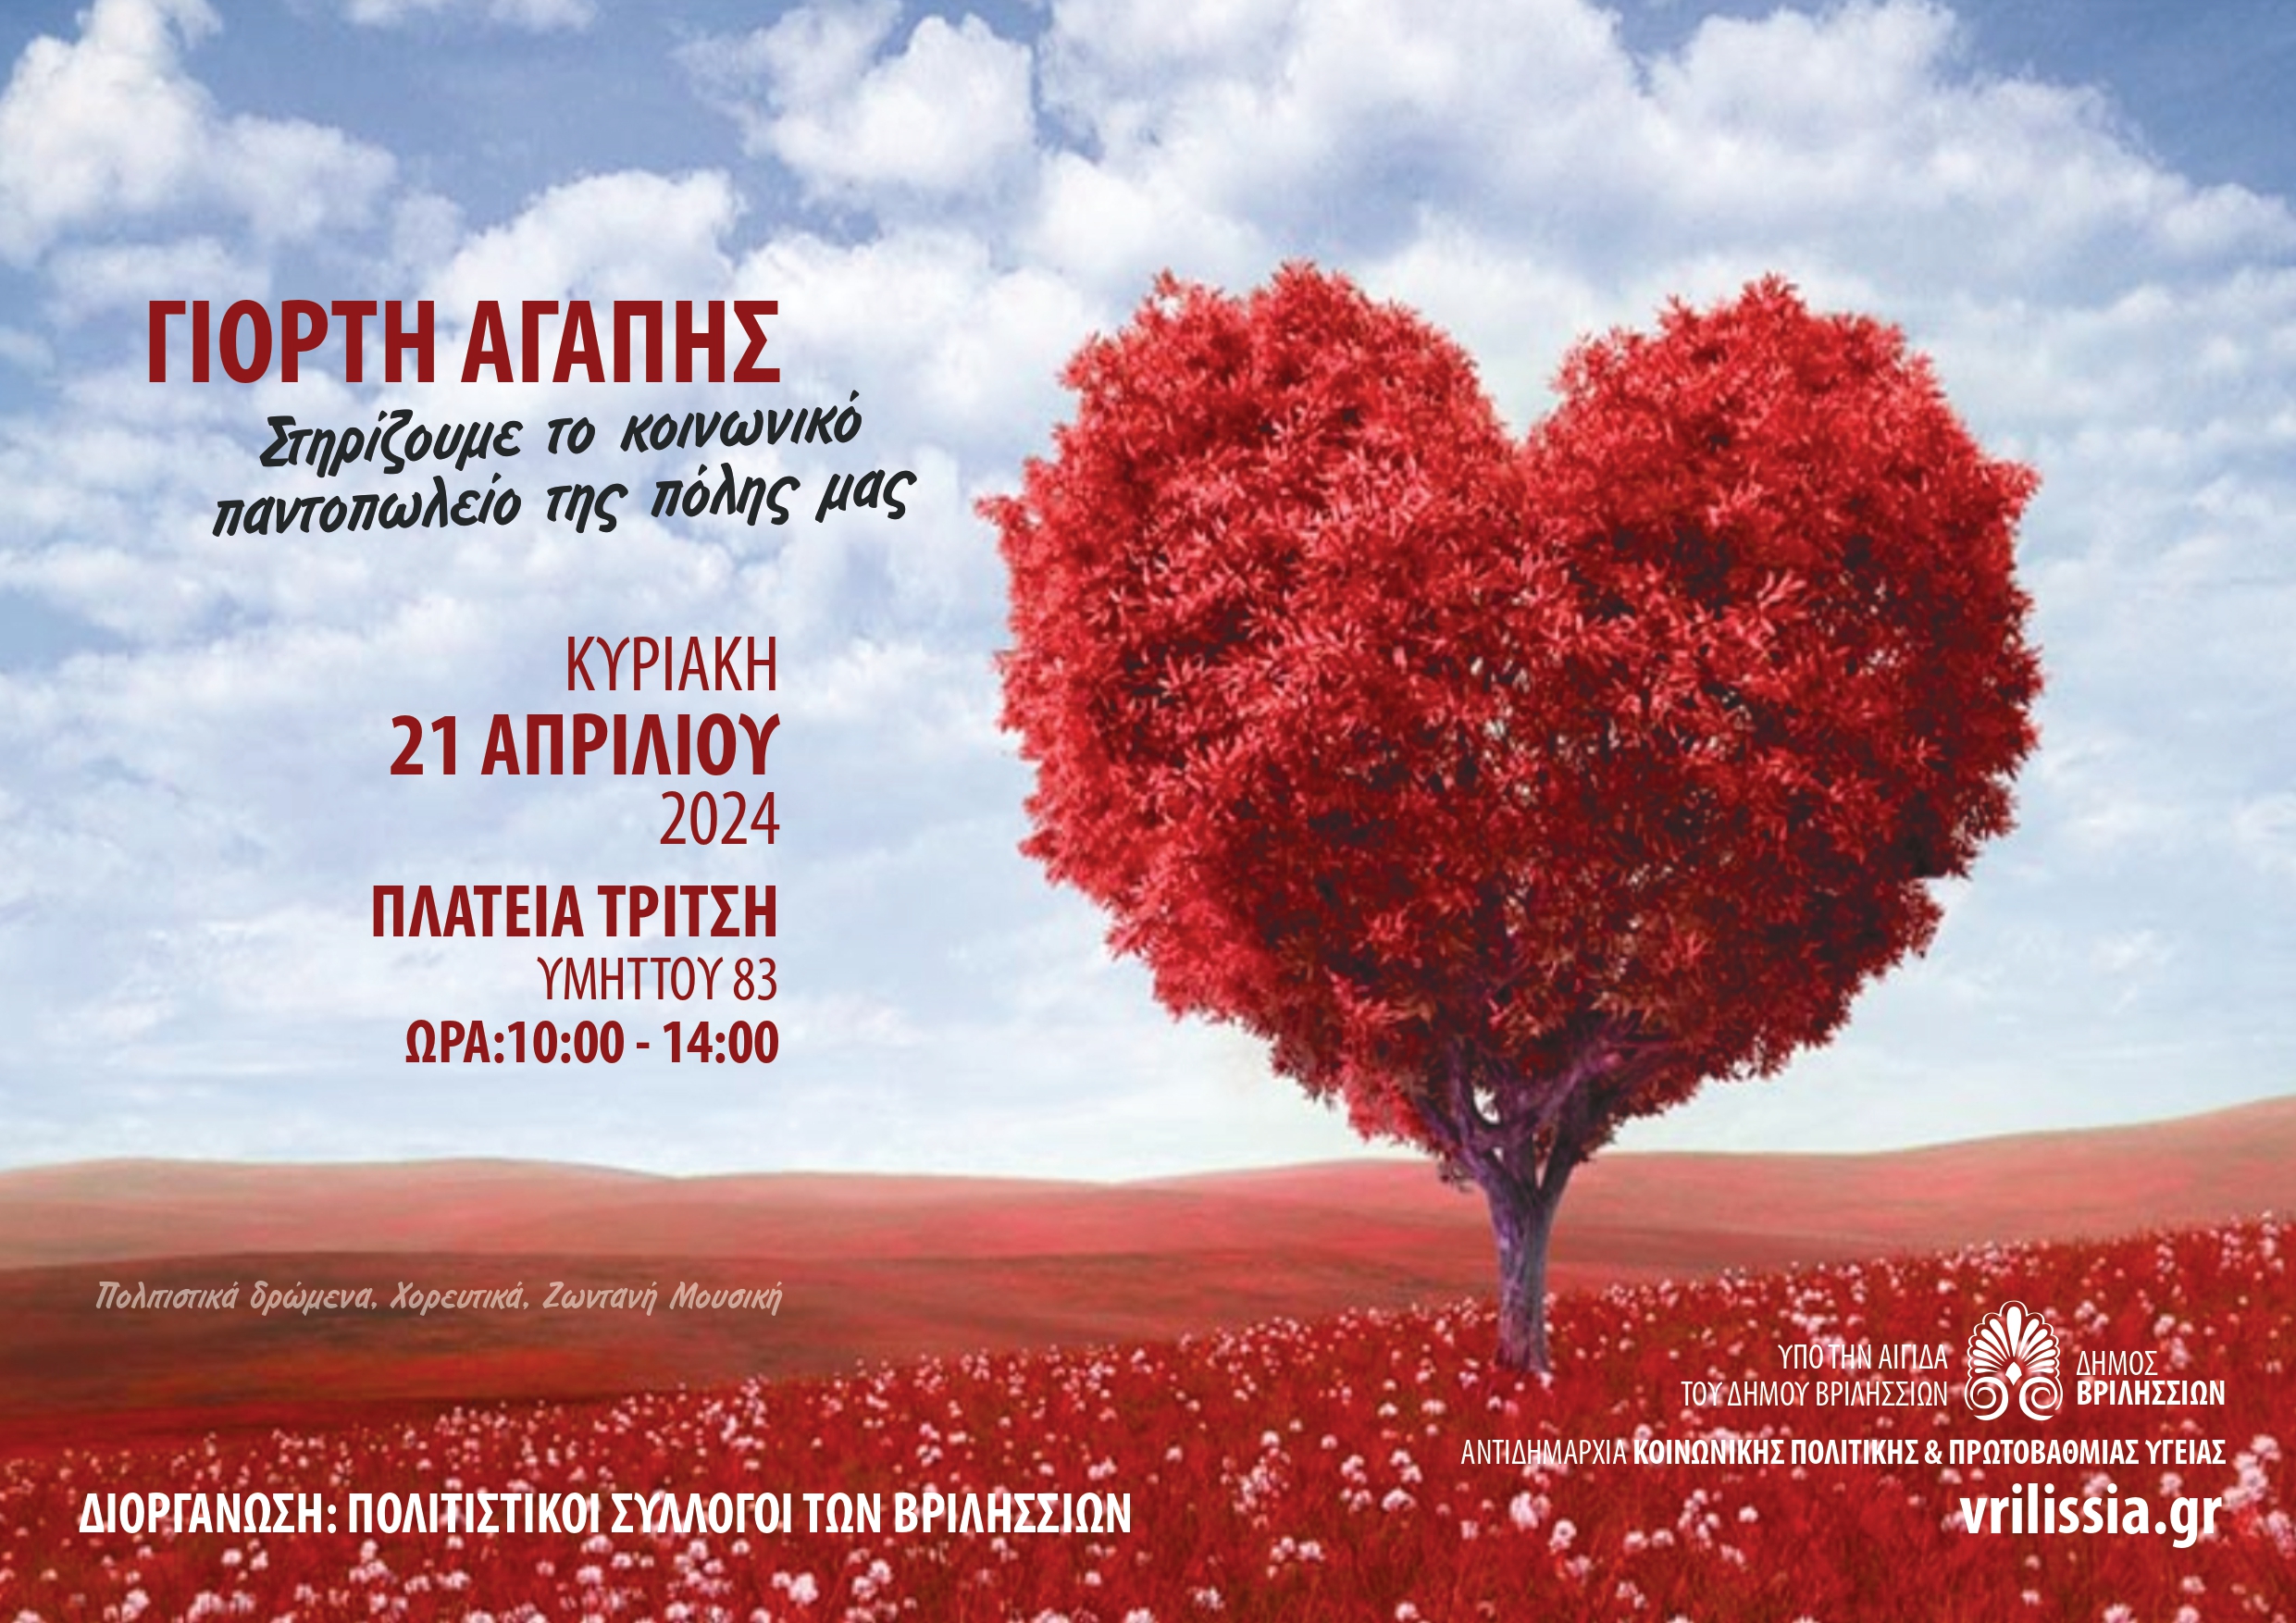 Γιορτή Αγάπης: Την Κυριακή 21 Απριλίου 11 σύλλογοι της πόλης μας ενώνουν τις δυνάμεις τους για καλό σκοπό 